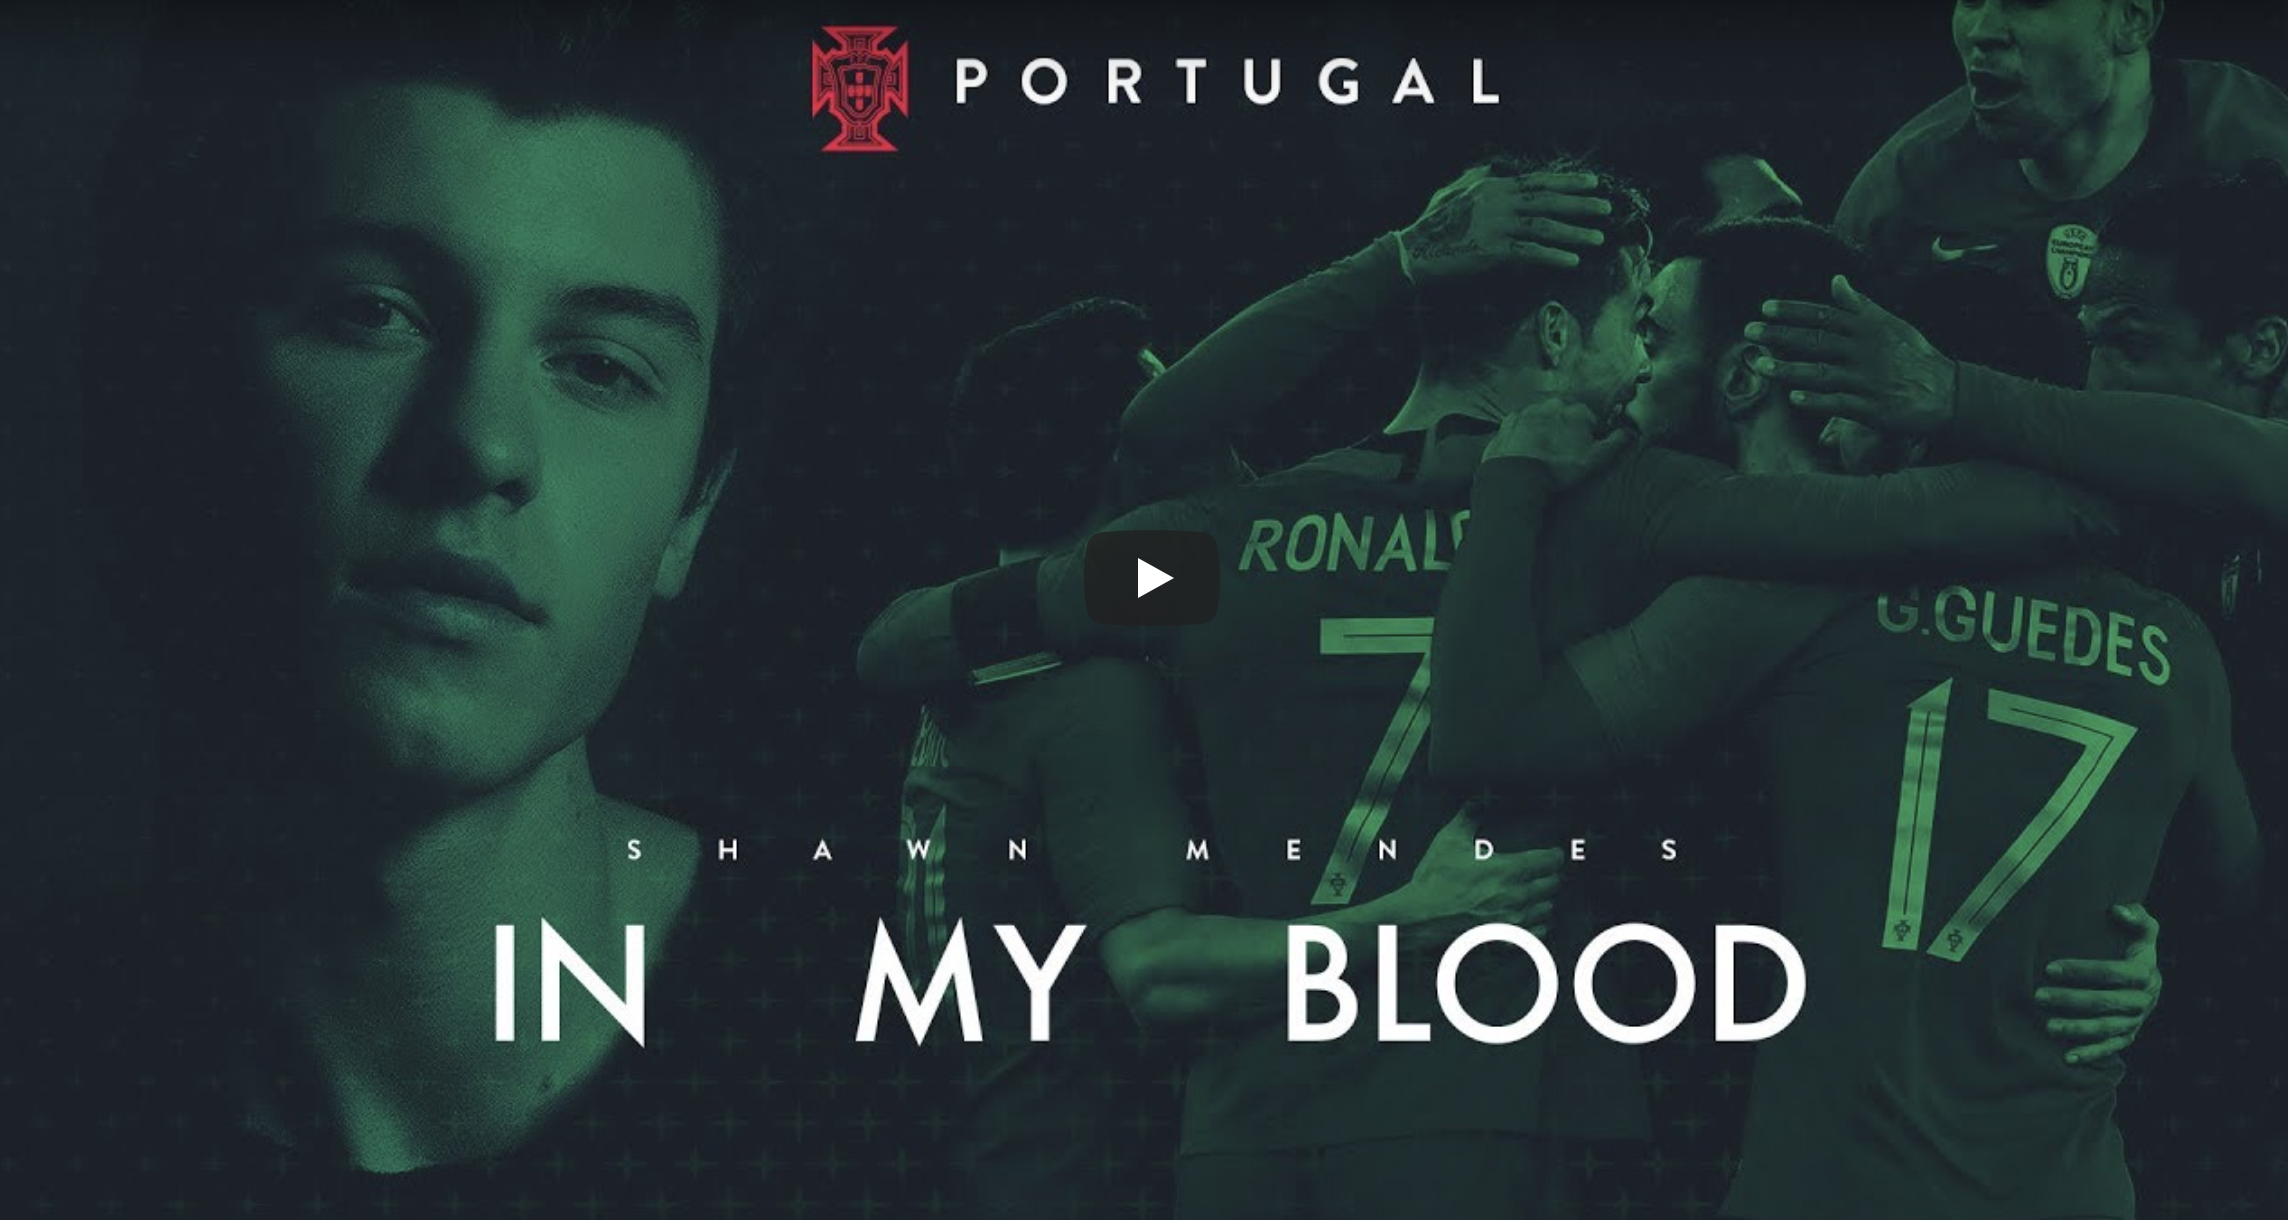 Shawn Mendes Musica Selecao Mundial 2018 Shawn Mendes Canta Música Oficial Da Seleção Portuguesa